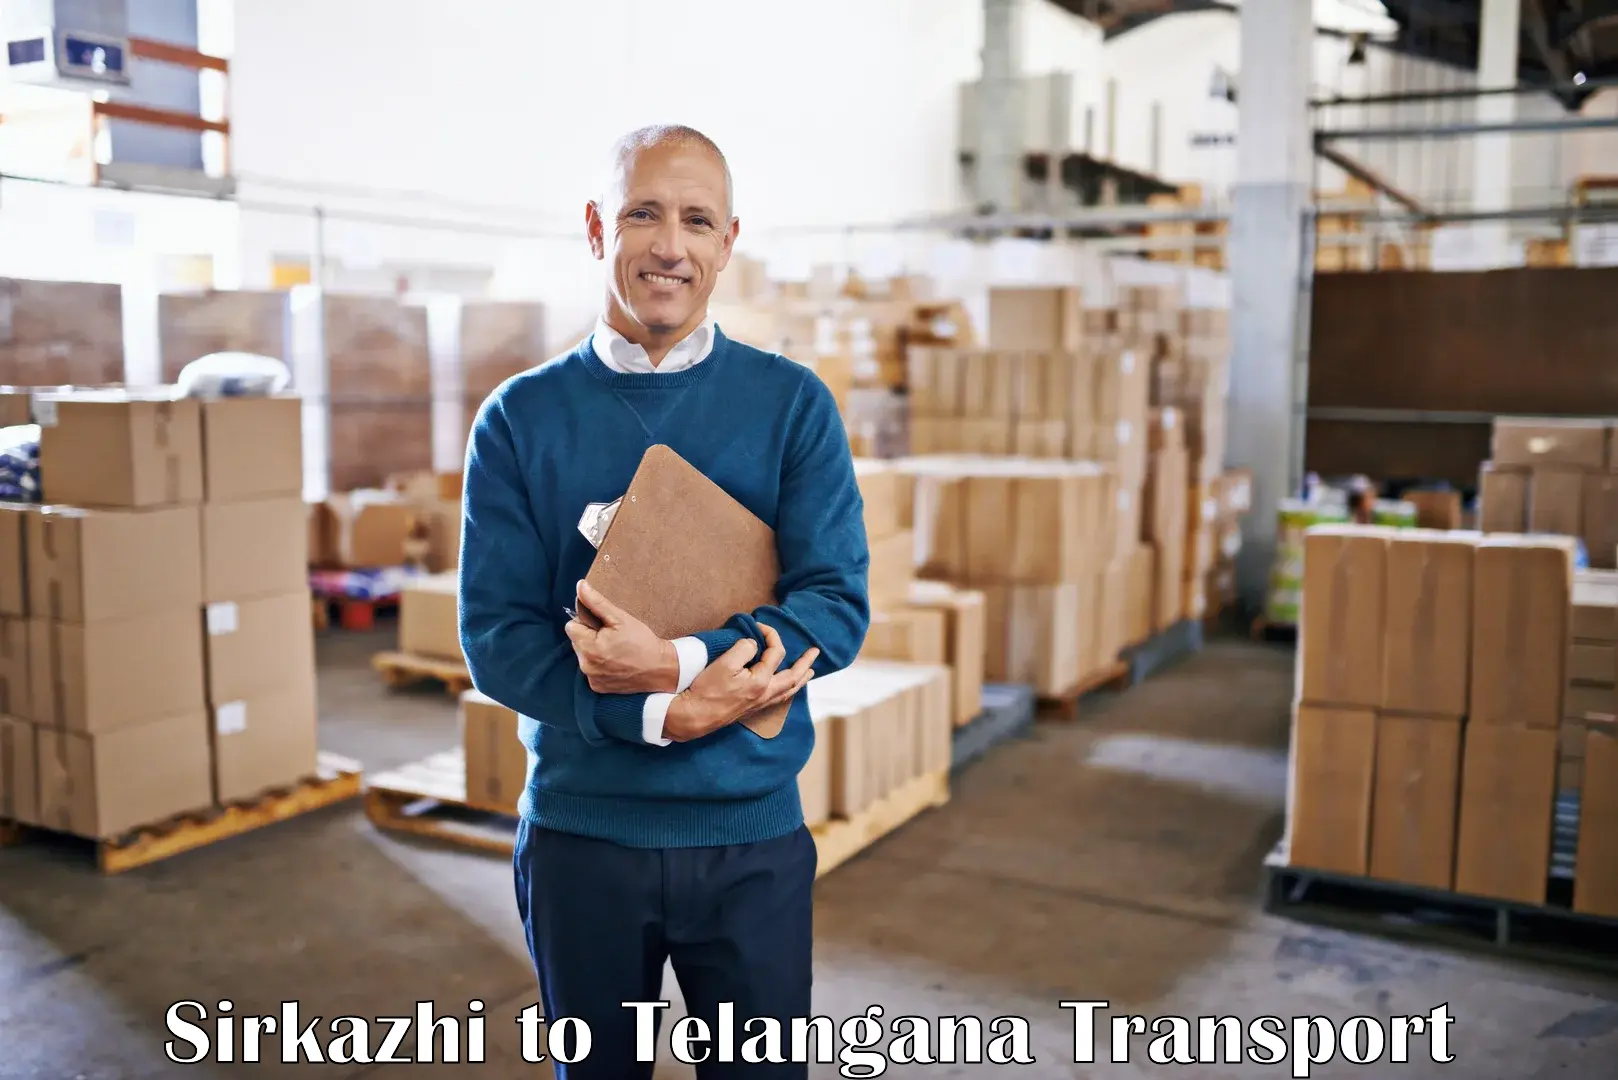 Furniture transport service Sirkazhi to Eligedu